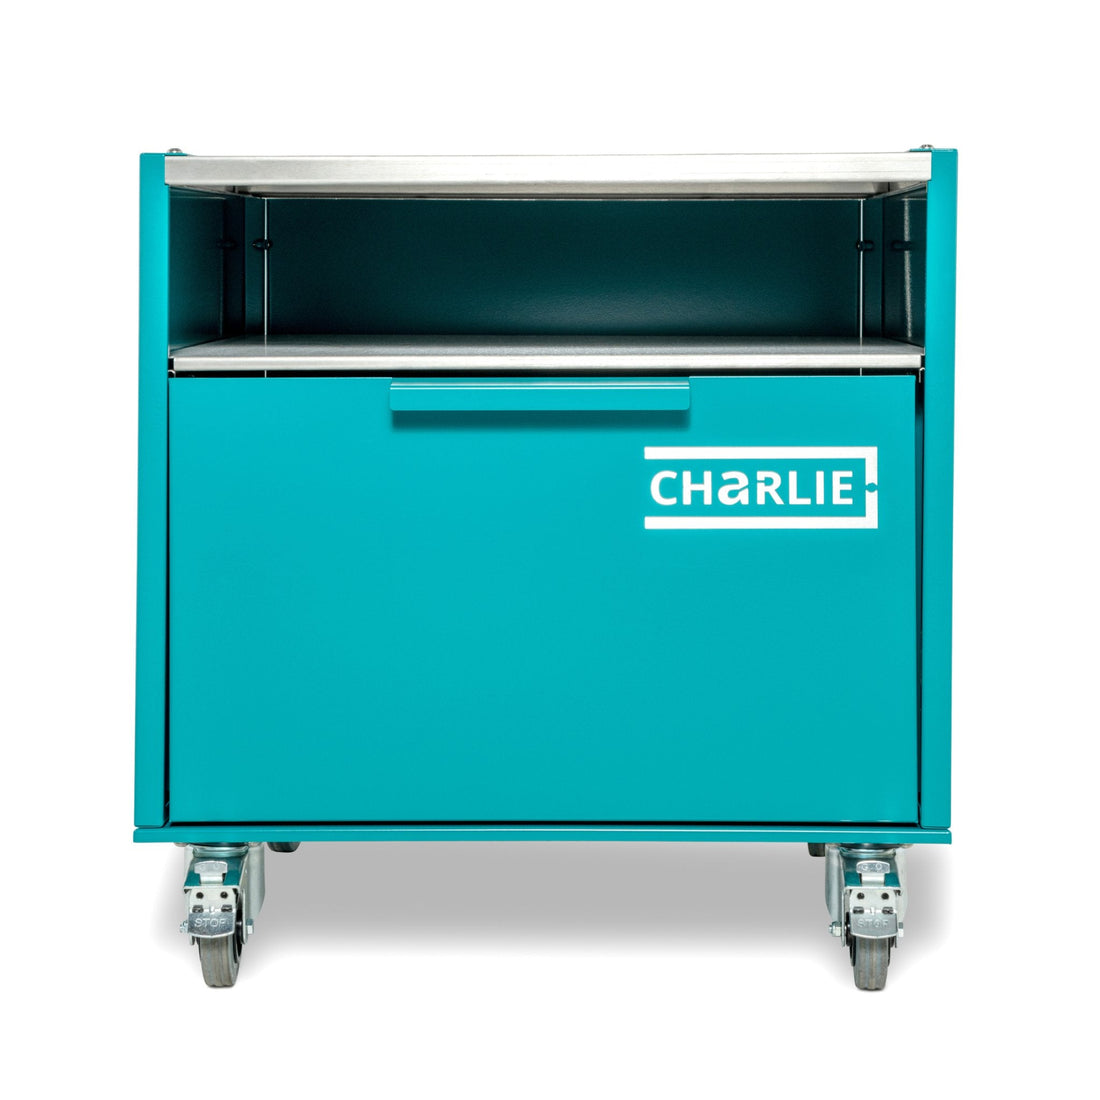 Charlie Base Cabinet - Teal Duck - Charlie Oven